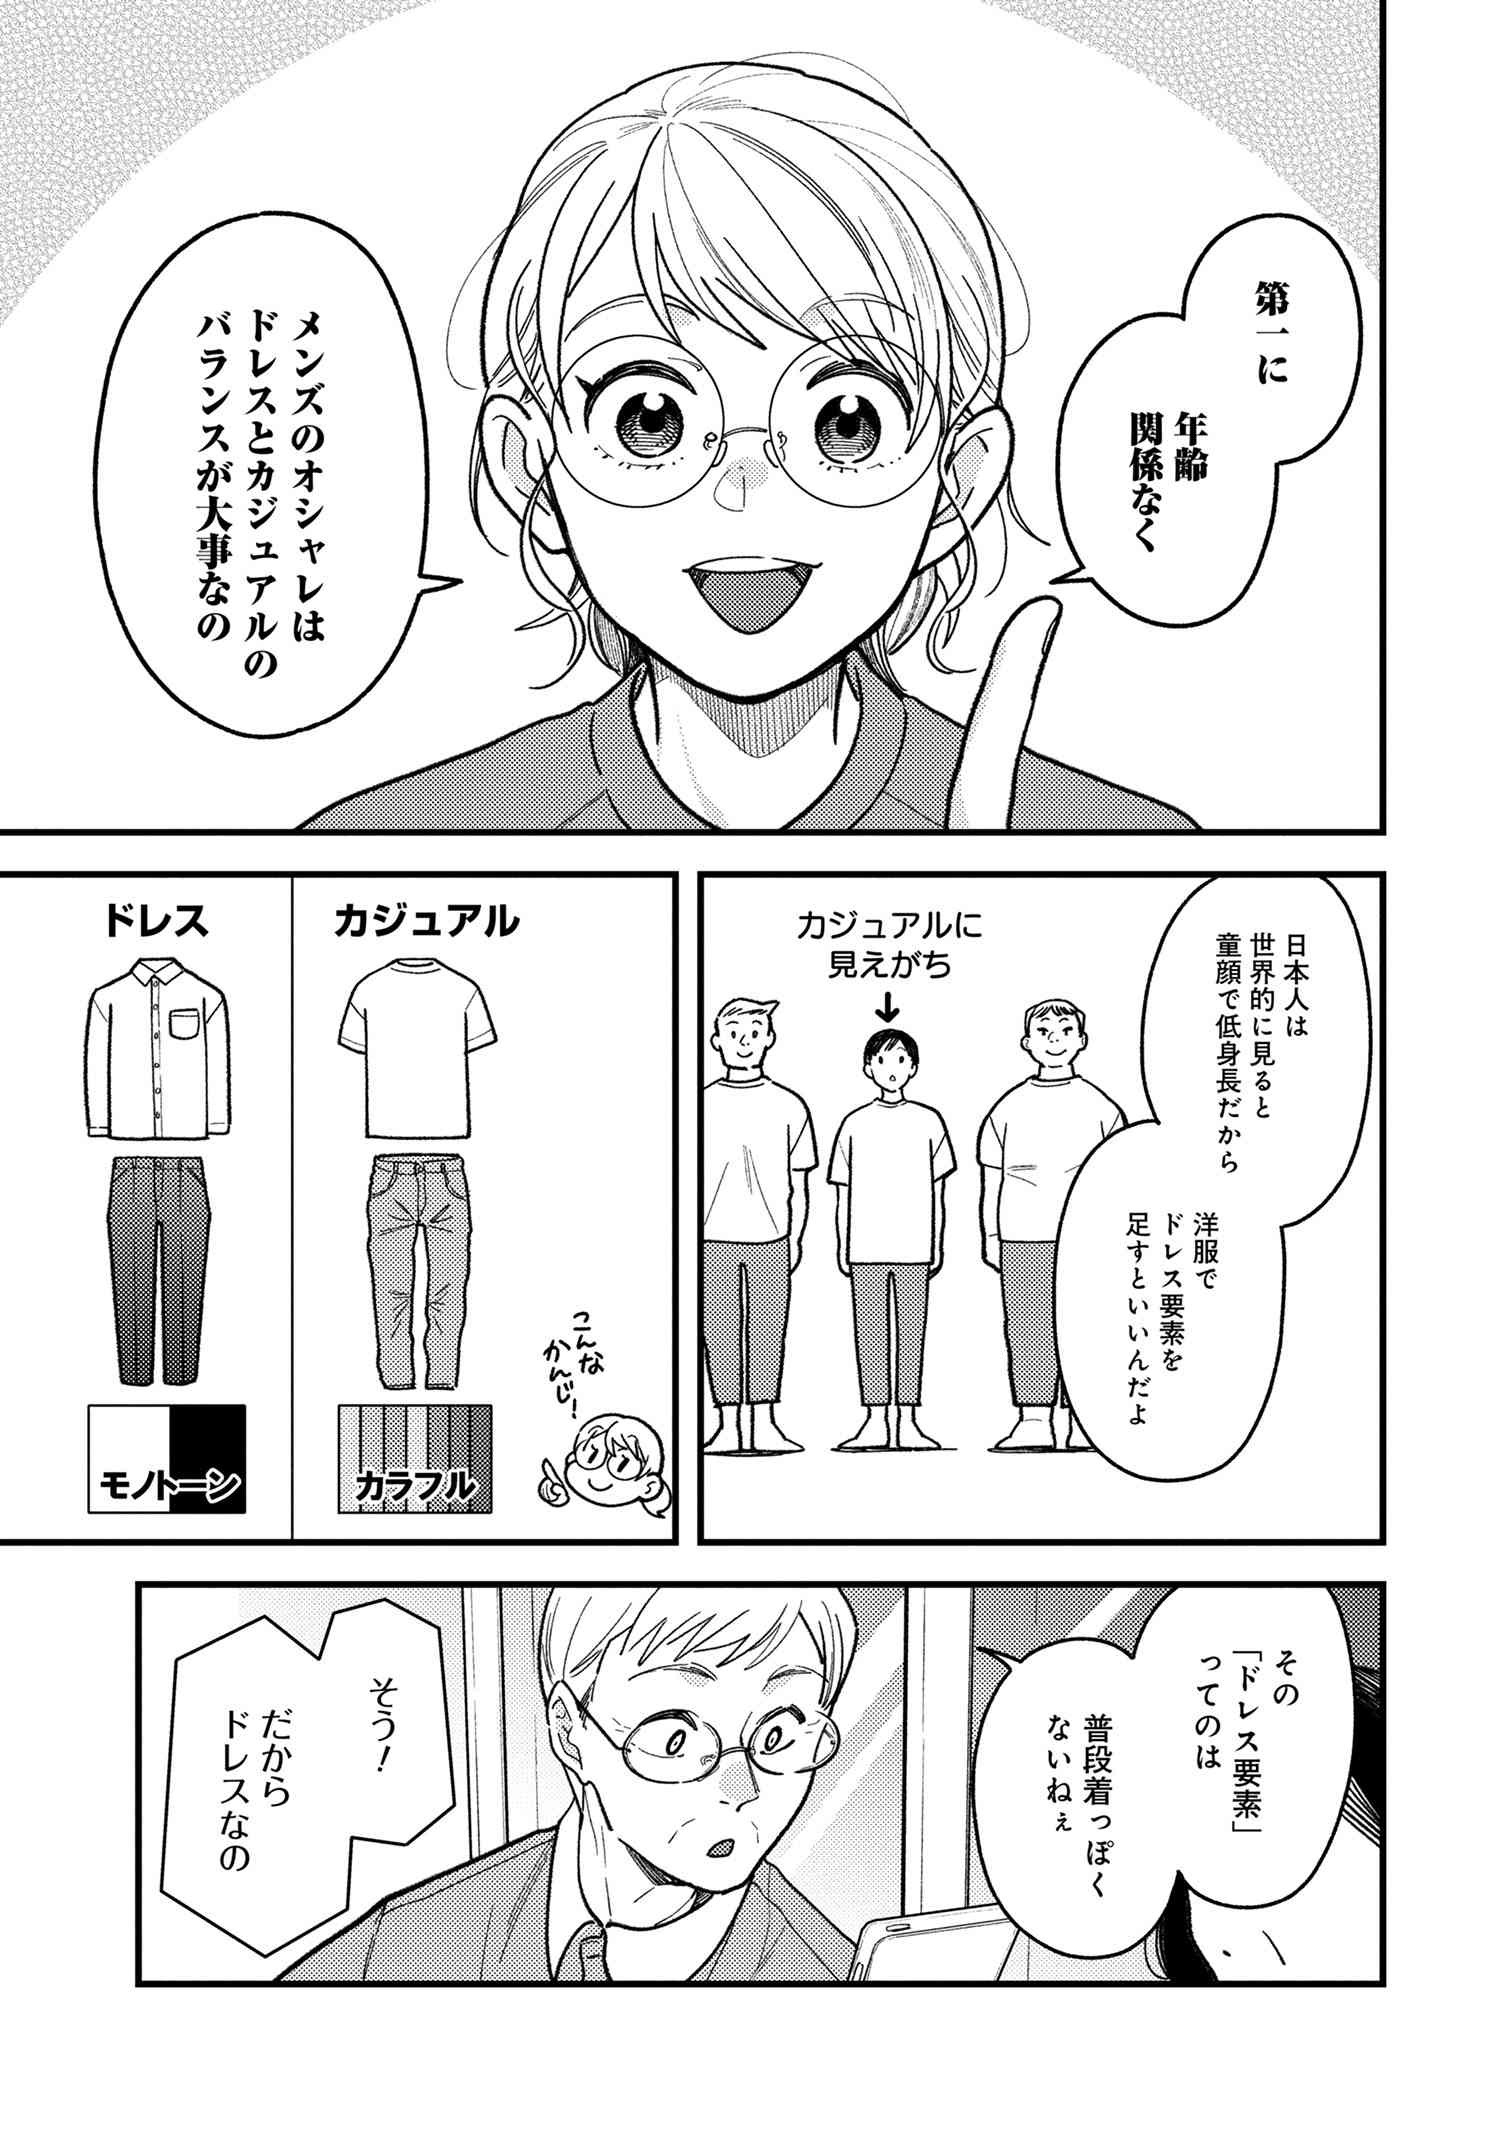 Fuku o Kiru Nara Konna Fuu ni - 服を着るならこんなふうに - Chapter 82 - Page 5